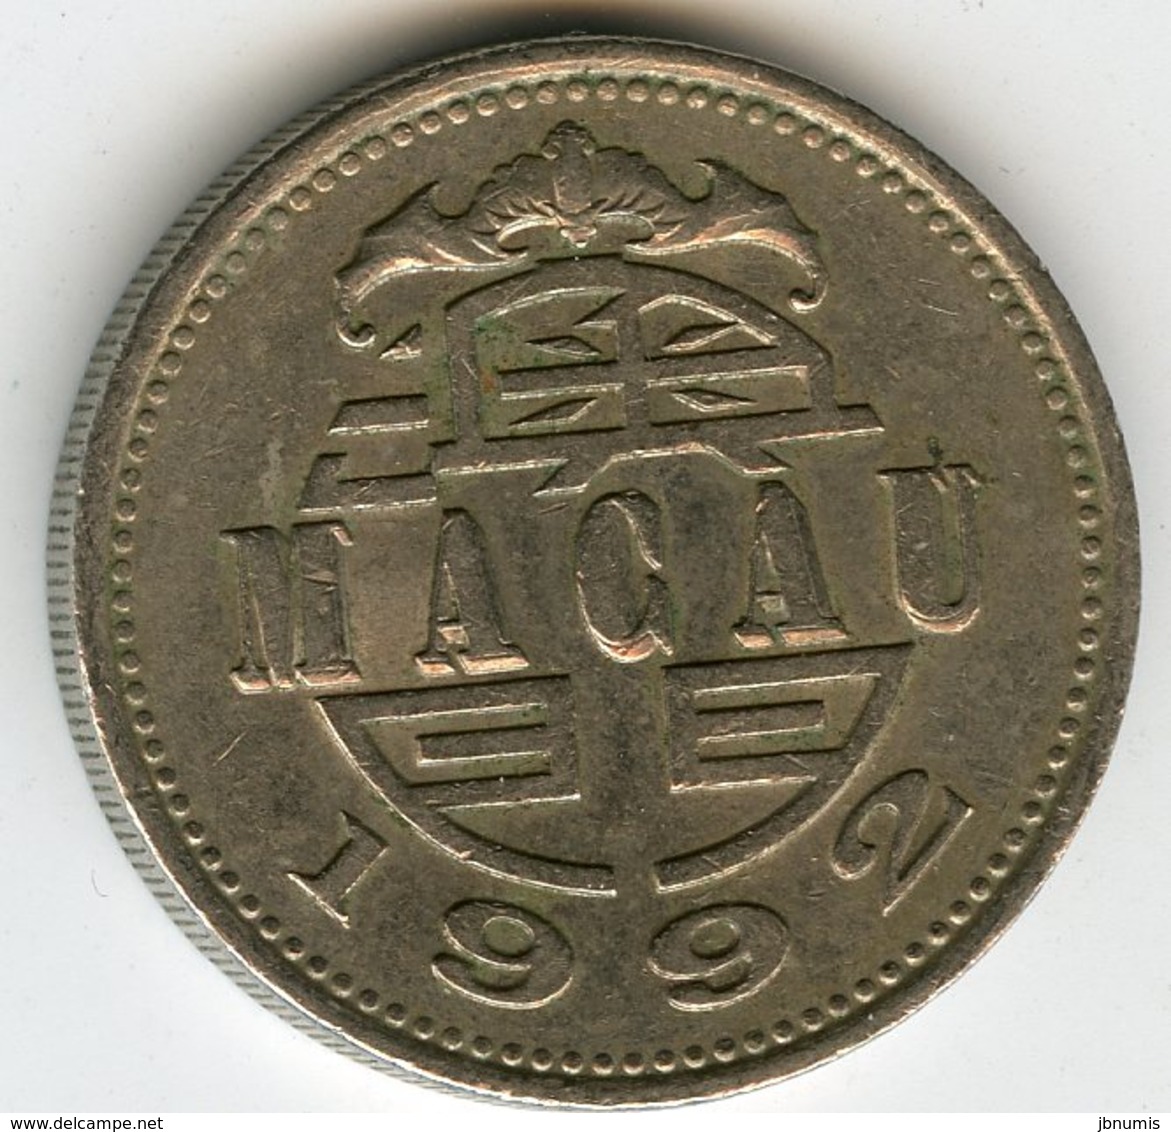 Macao Macau 1 Pataca 1992 KM 57 - Macao